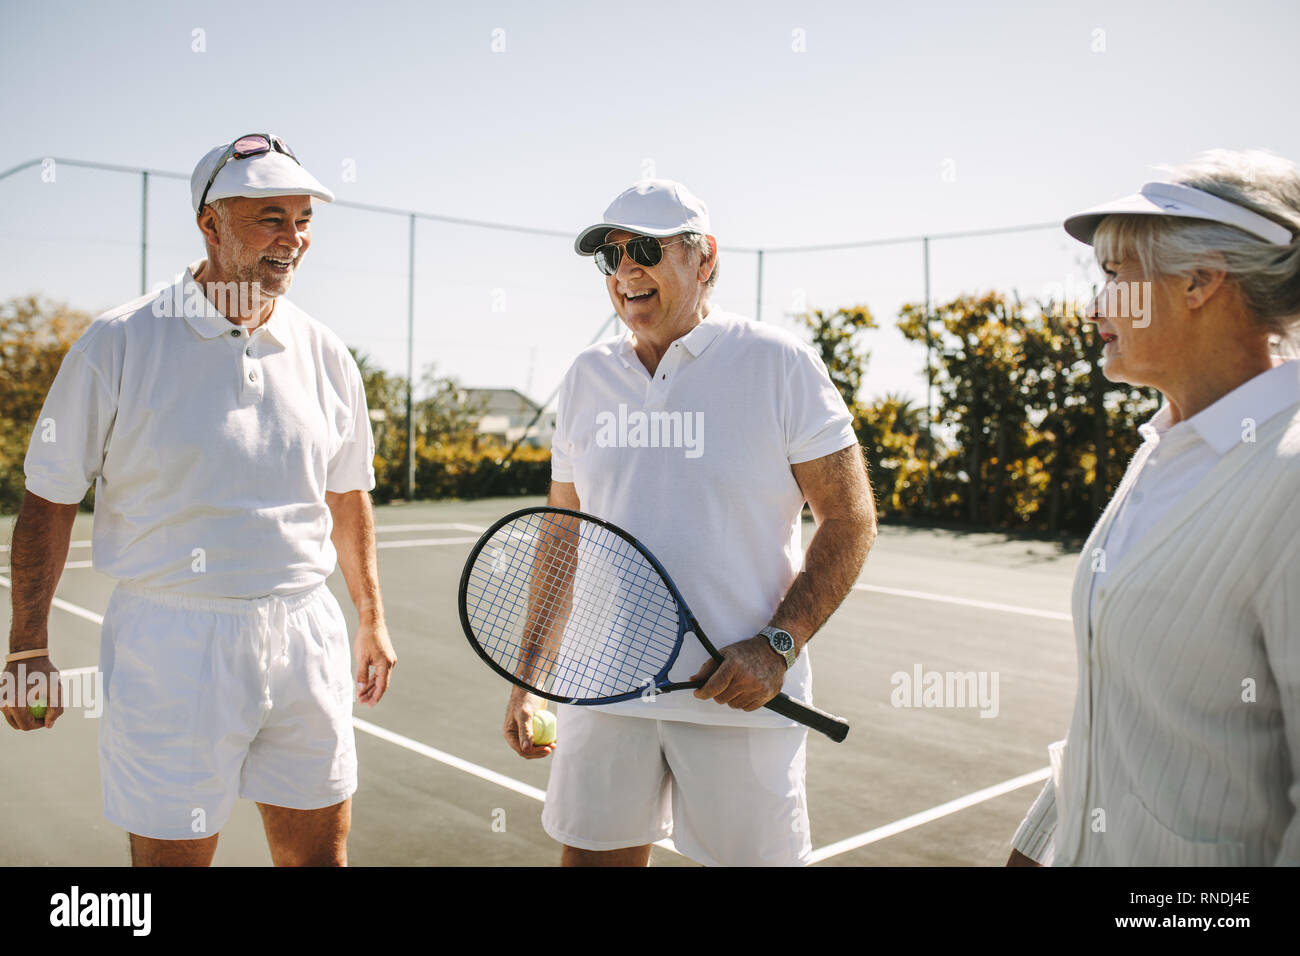 Les personnes jouant au tennis sur une journée ensoleillée. Cheerful old men standing on tennis holding racket et de balles. Banque D'Images